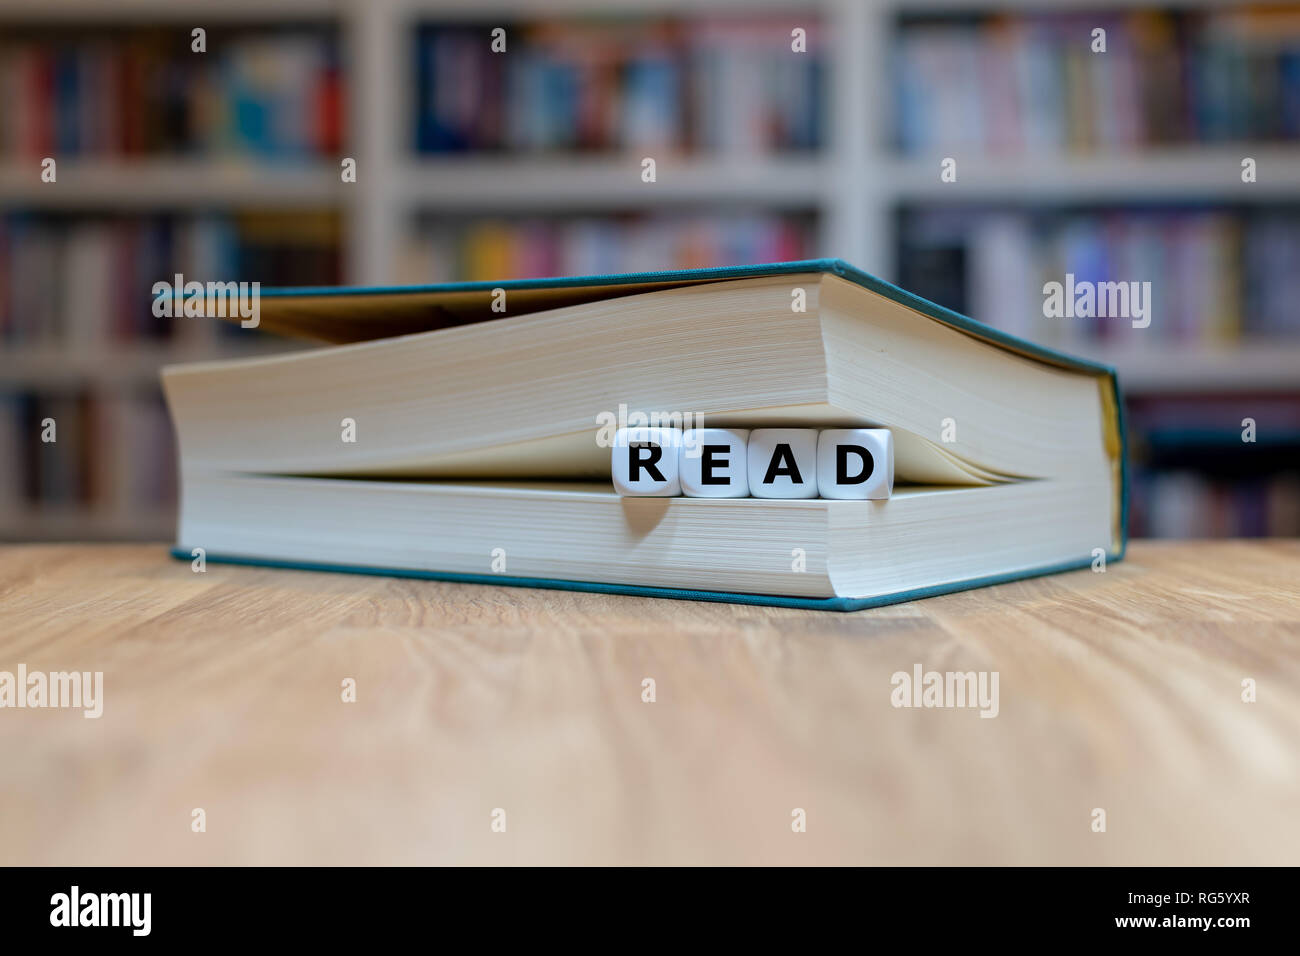 Dés dans un livre forment le mot 'read'. Livre est couchée sur un bureau en bois en face d'une étagère. Banque D'Images